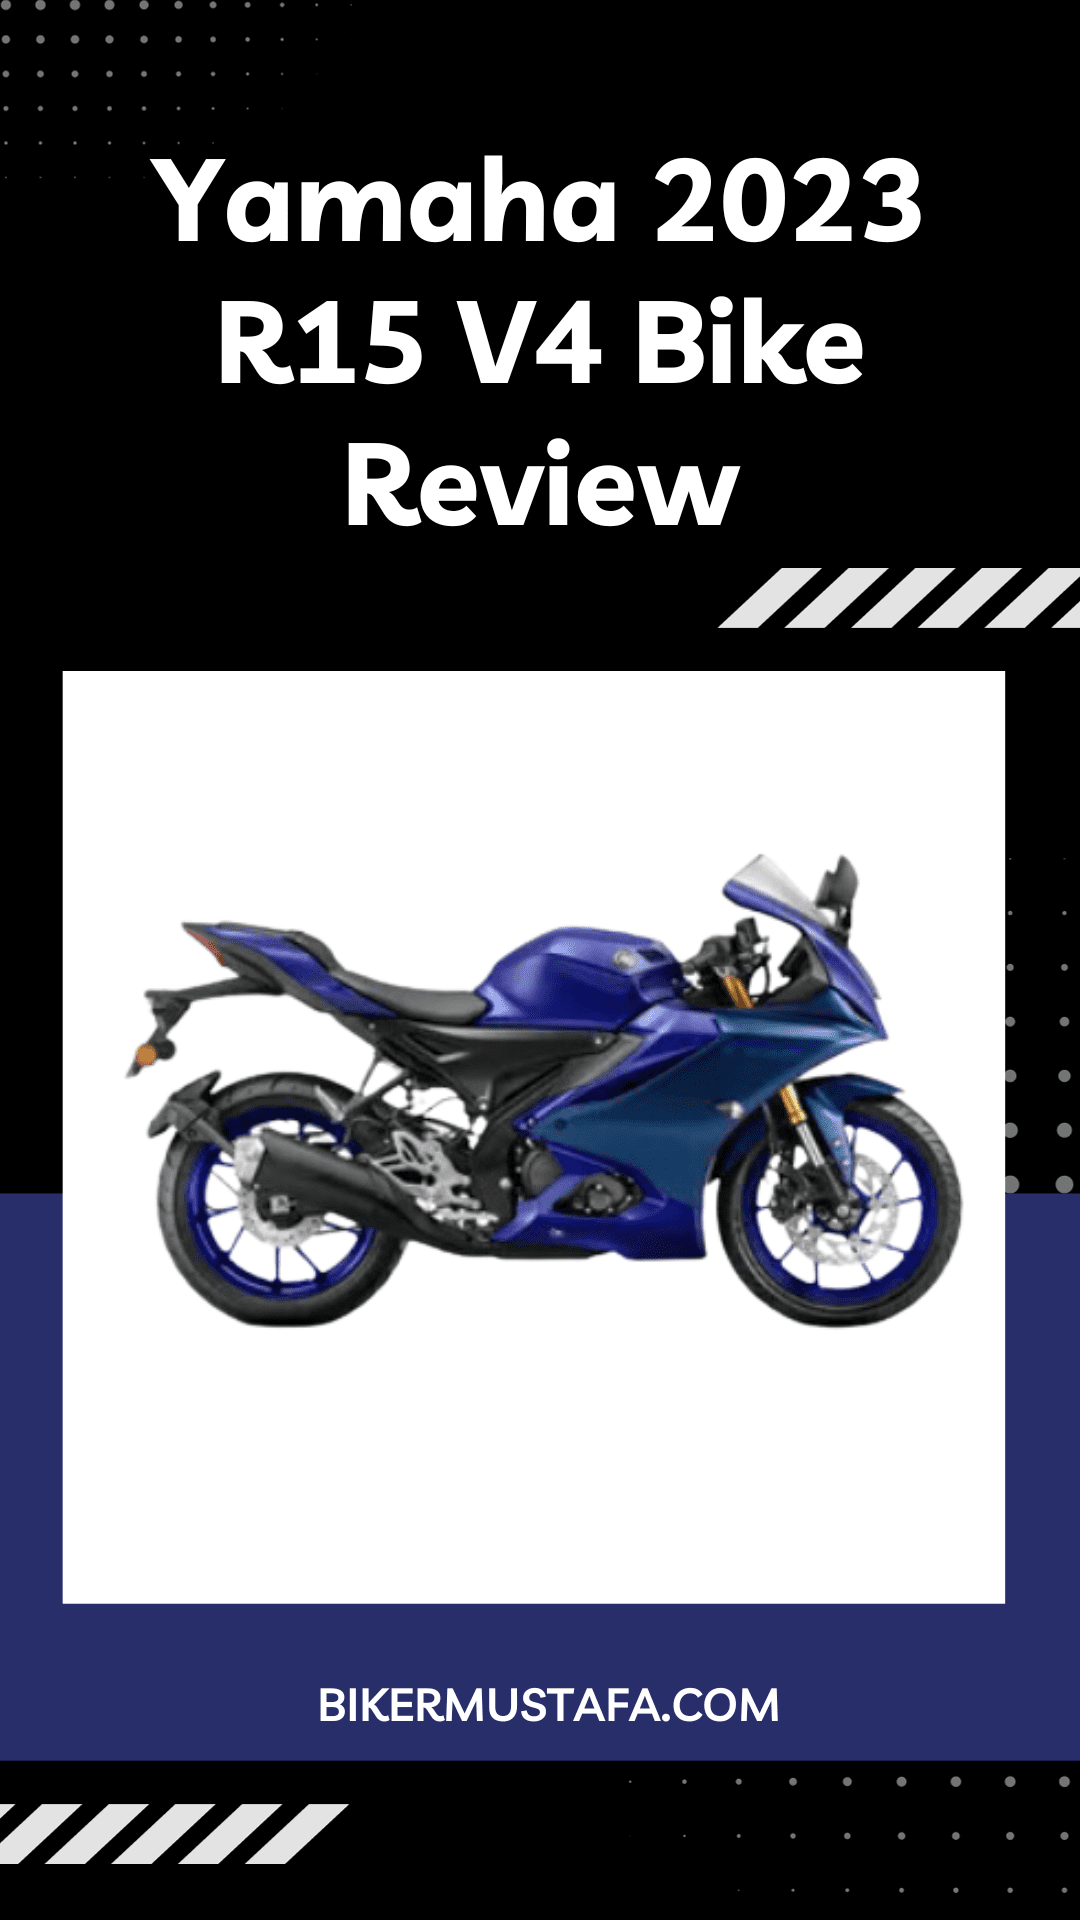 Yamaha 2023 R15 V4 Bike Review